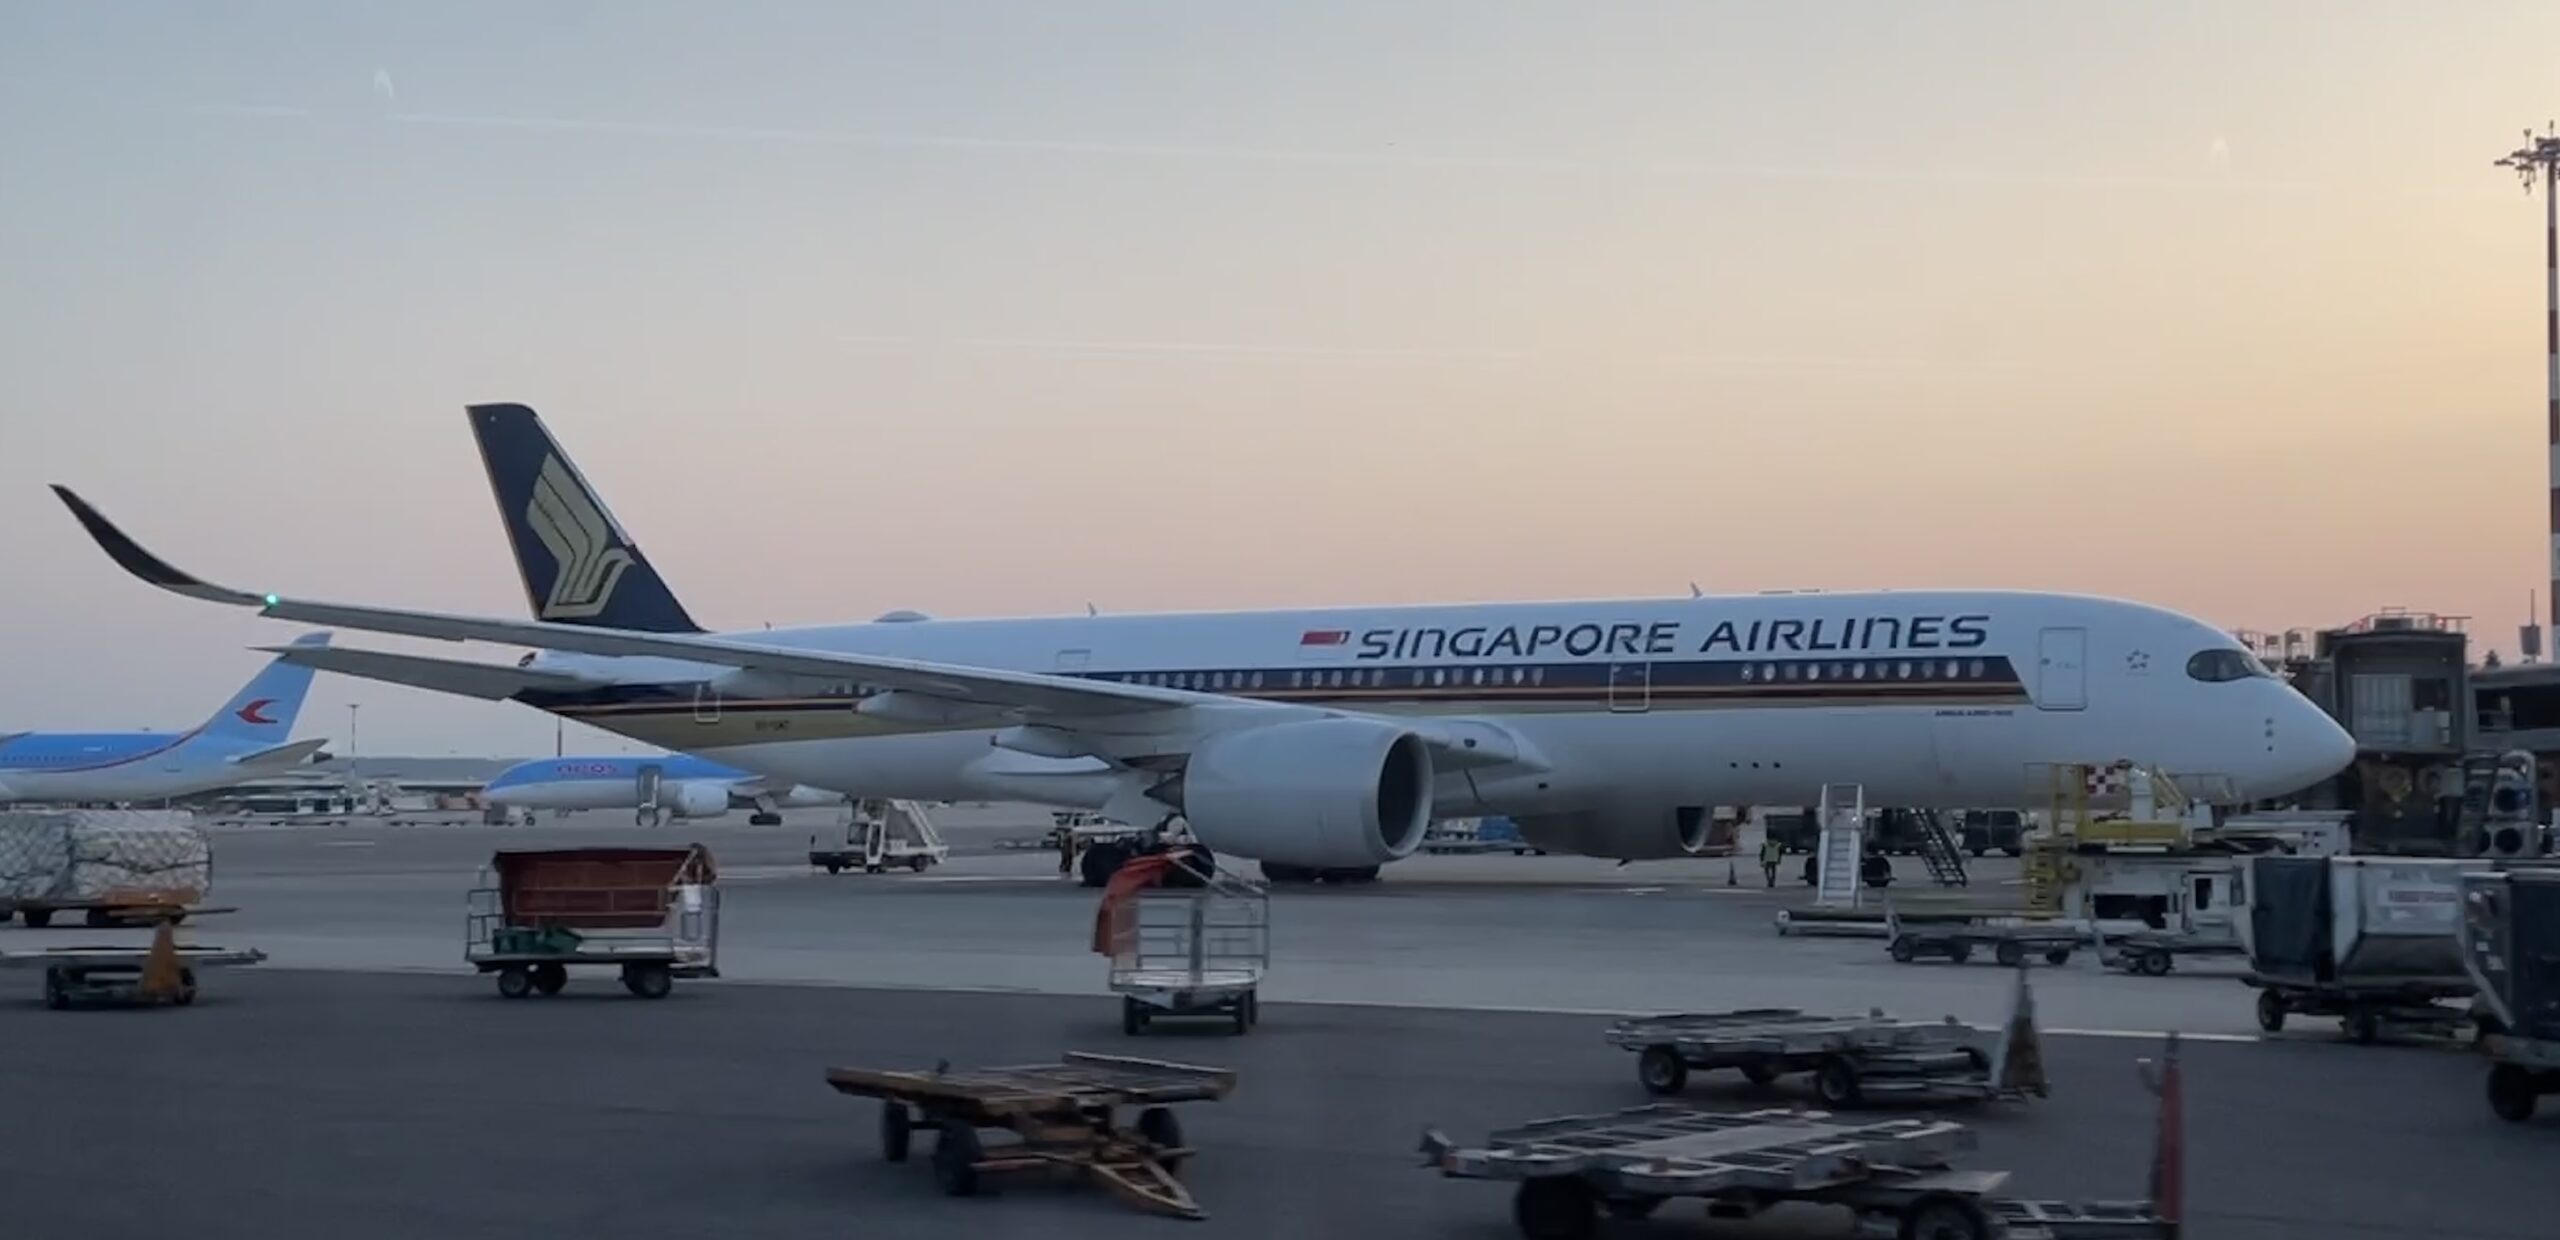 מטוס A350 של סינגפור איירליינס בשדה התעופה במילאנו